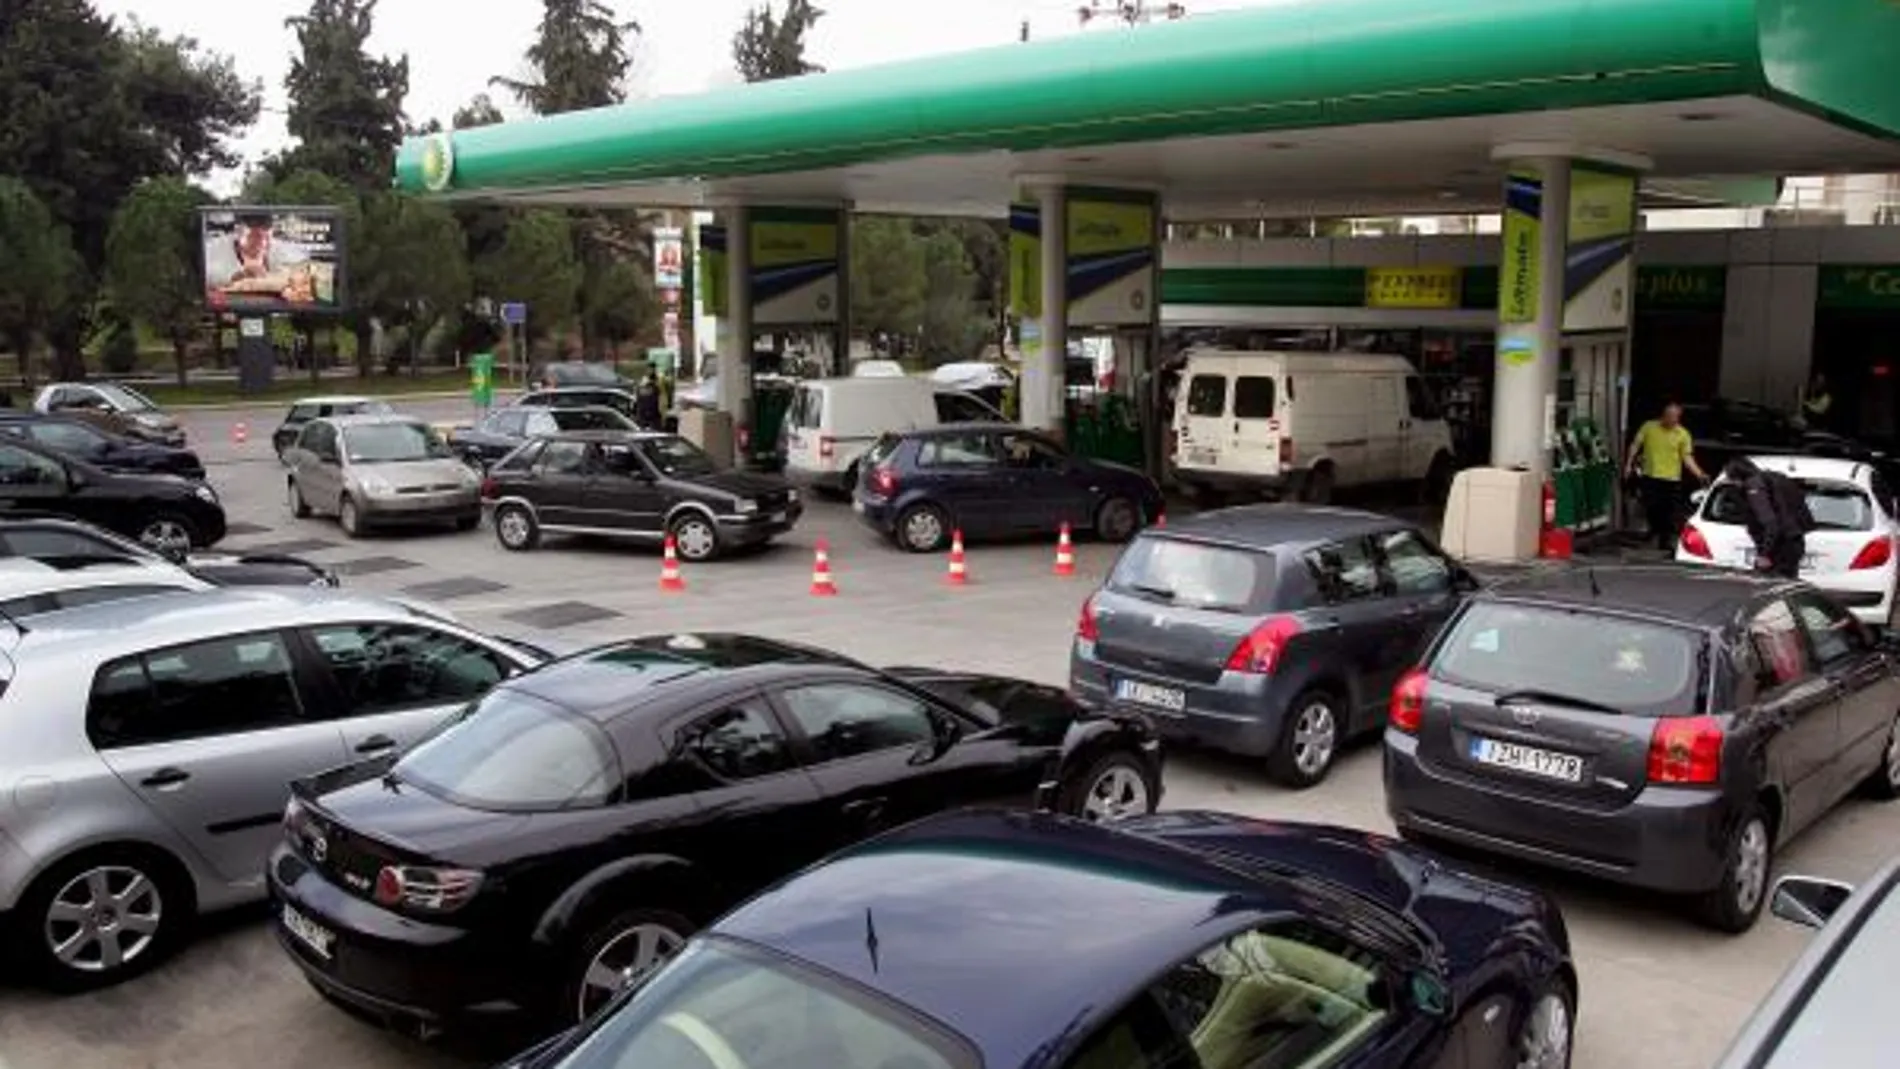 El litro de gasolina supera los 1,28 euros y bate récords